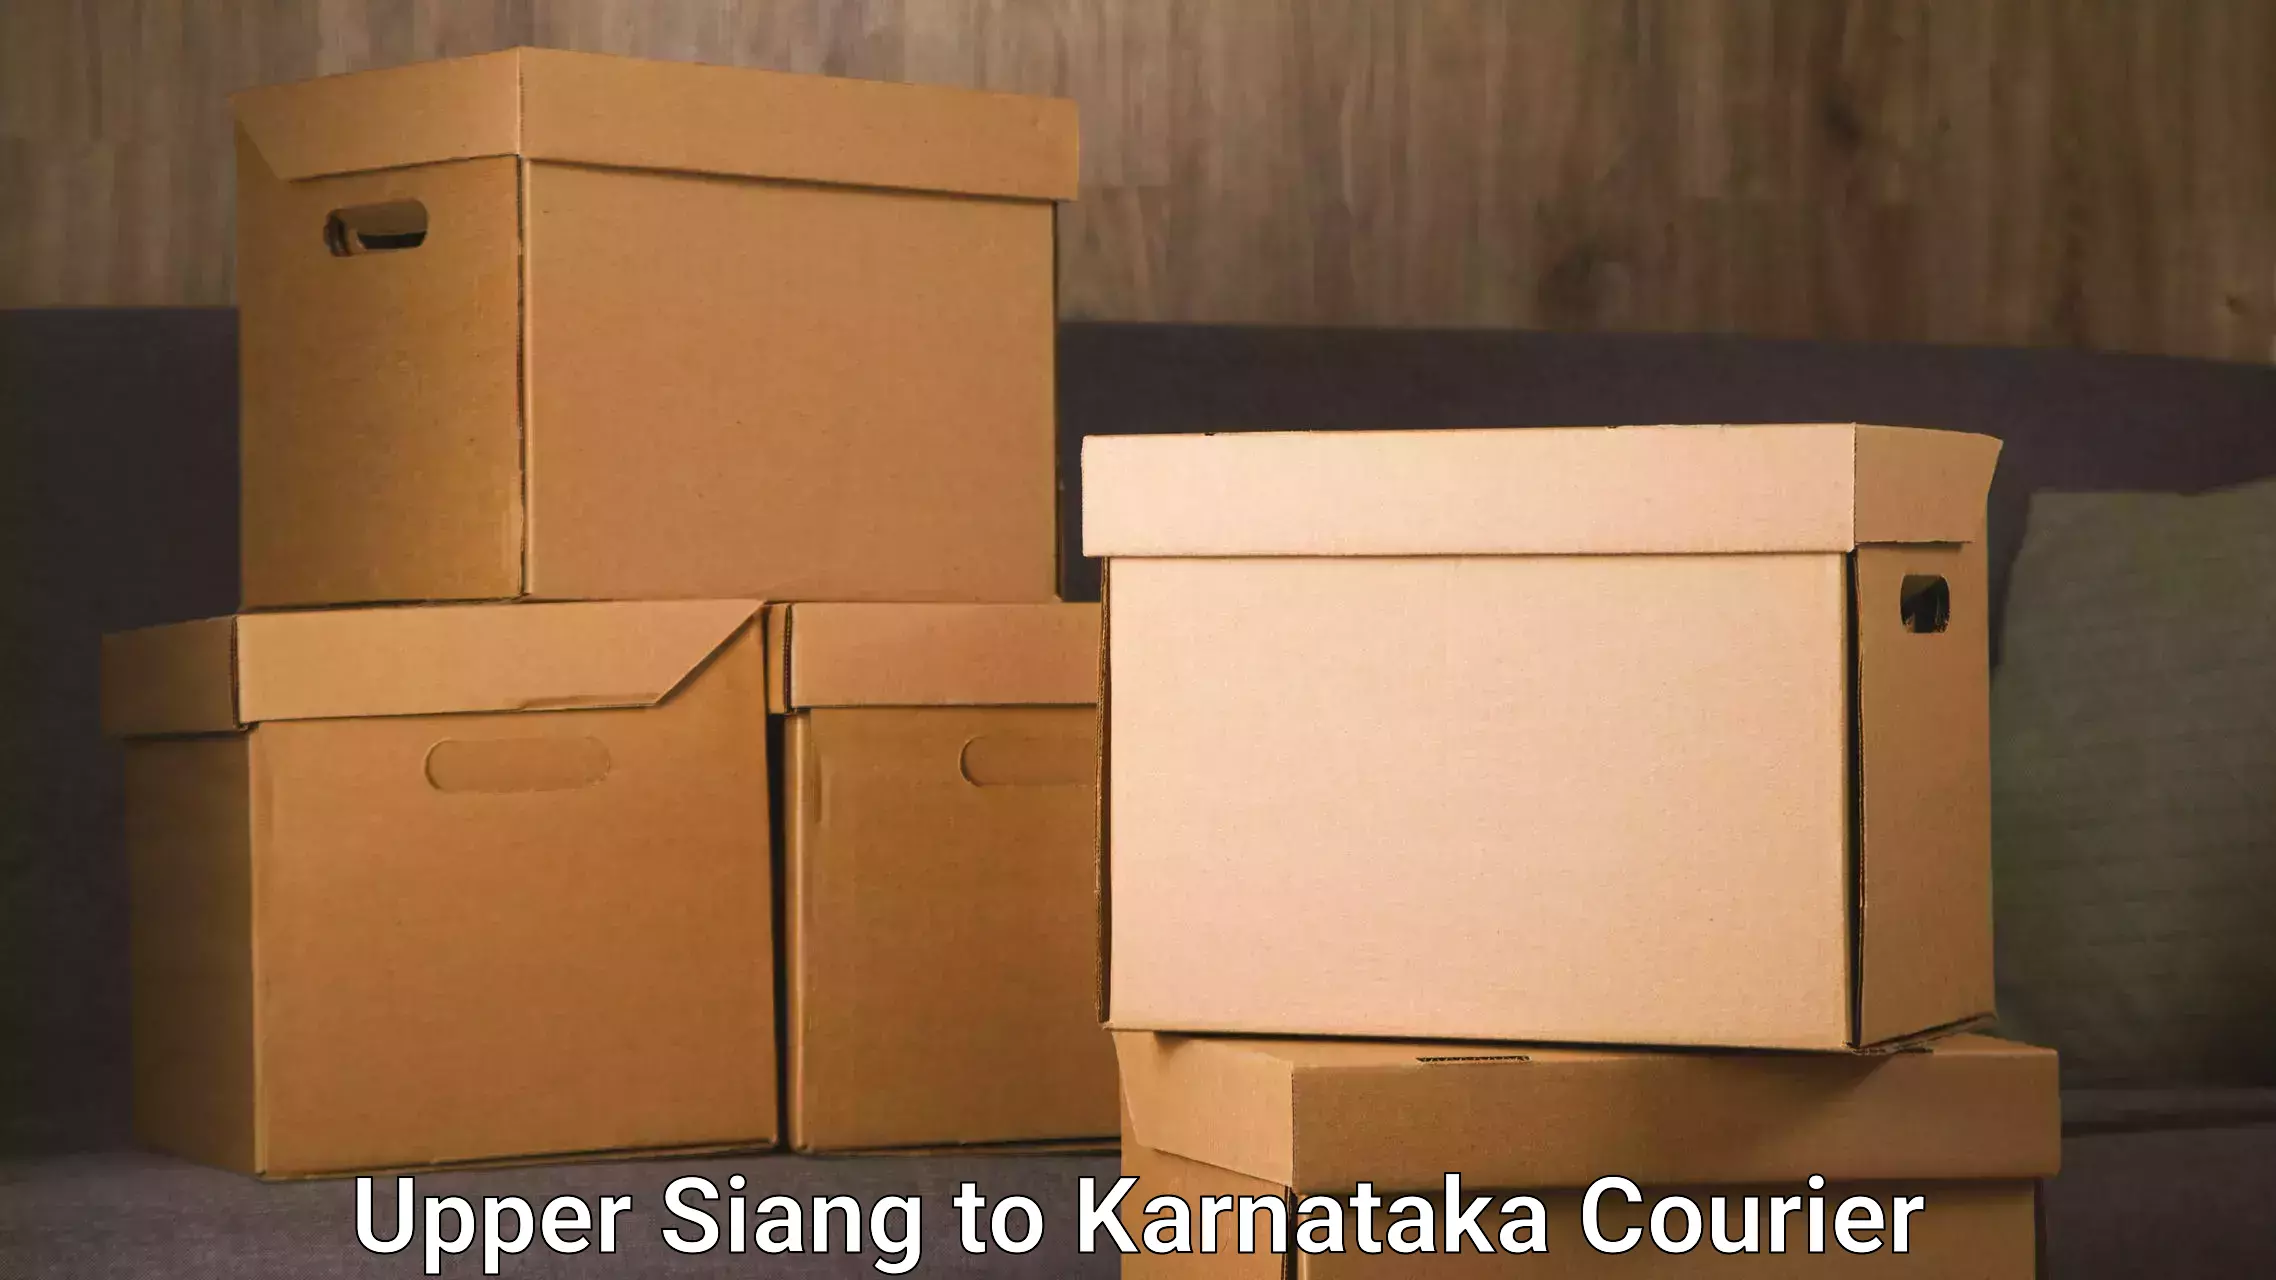 Express logistics providers Upper Siang to Karnataka